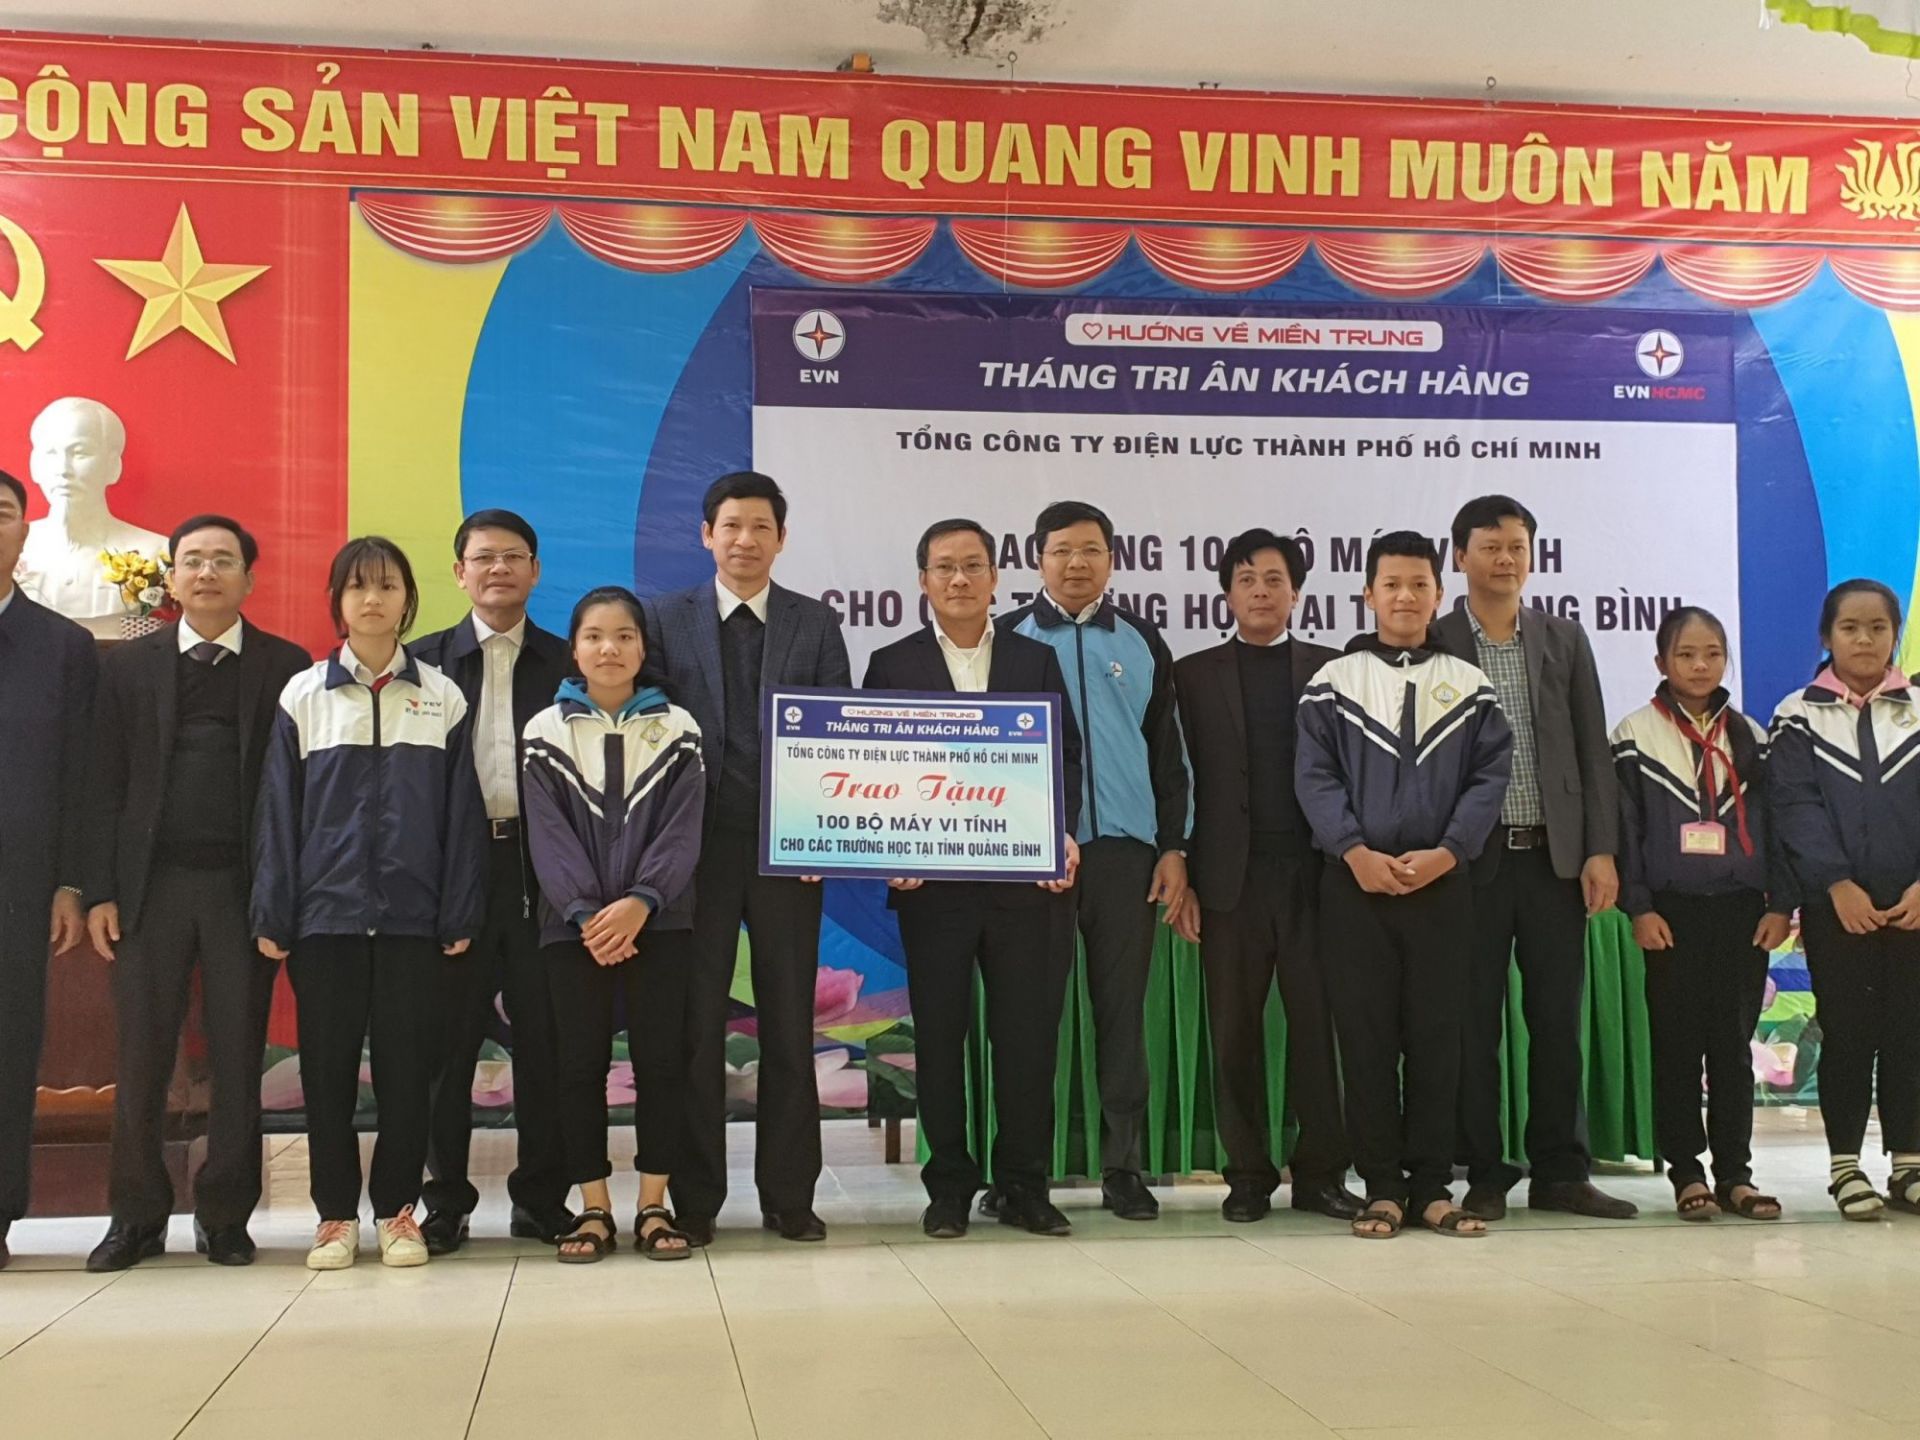 Phó Tổng giám đốc EVNHCMC Bùi Trung Kiên trao tặng 100 máy tính cho học sinh Quảng Bình bị thiệt hại do bão lũ, là một trong nhiều hoạt động xã hội, vì cộng đồng của EVNHCMC